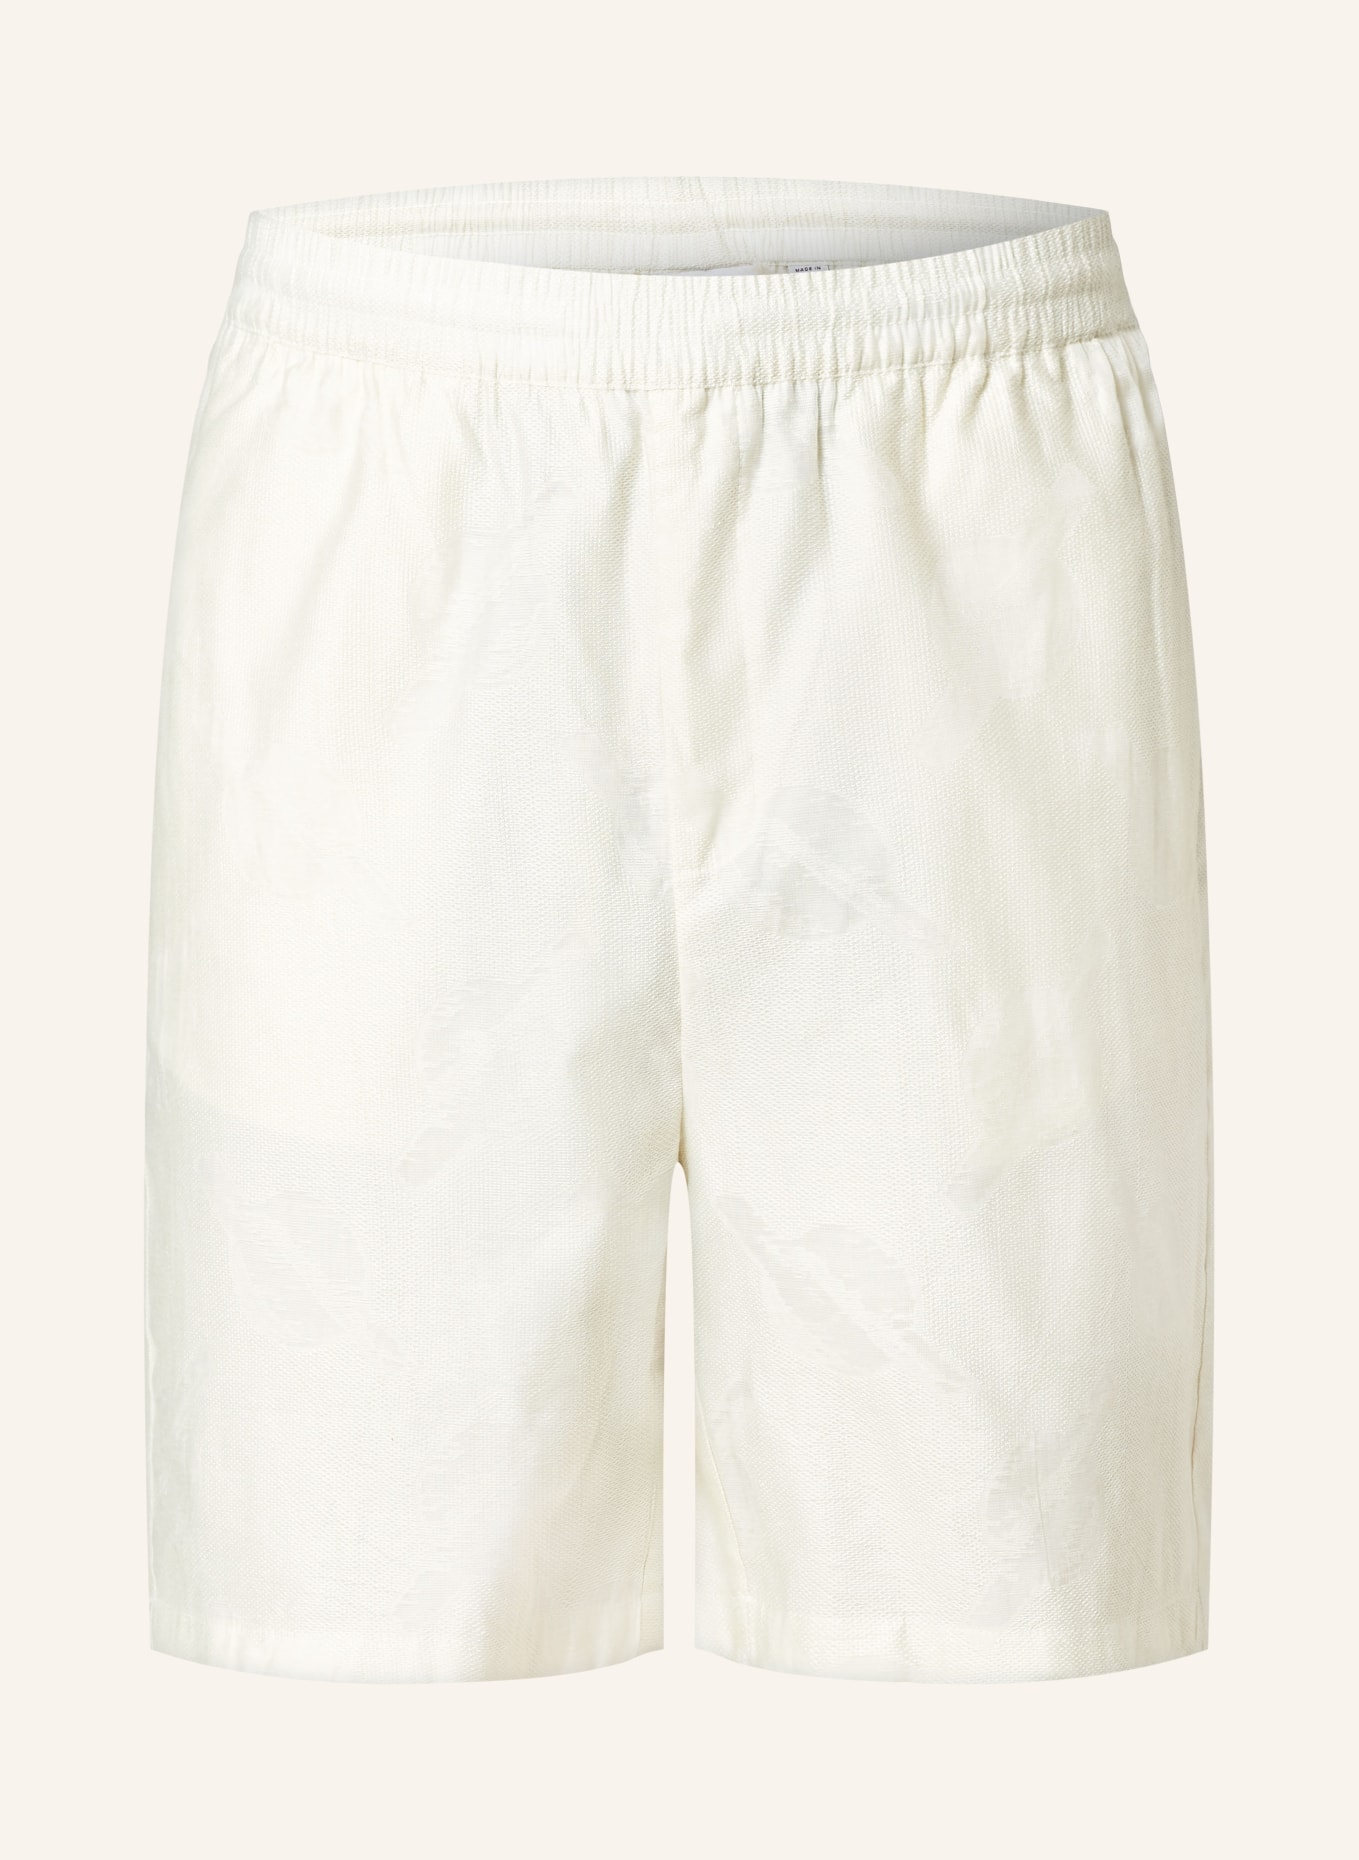 DAILY PAPER Shorts SALIM, Farbe: ECRU (Bild 1)